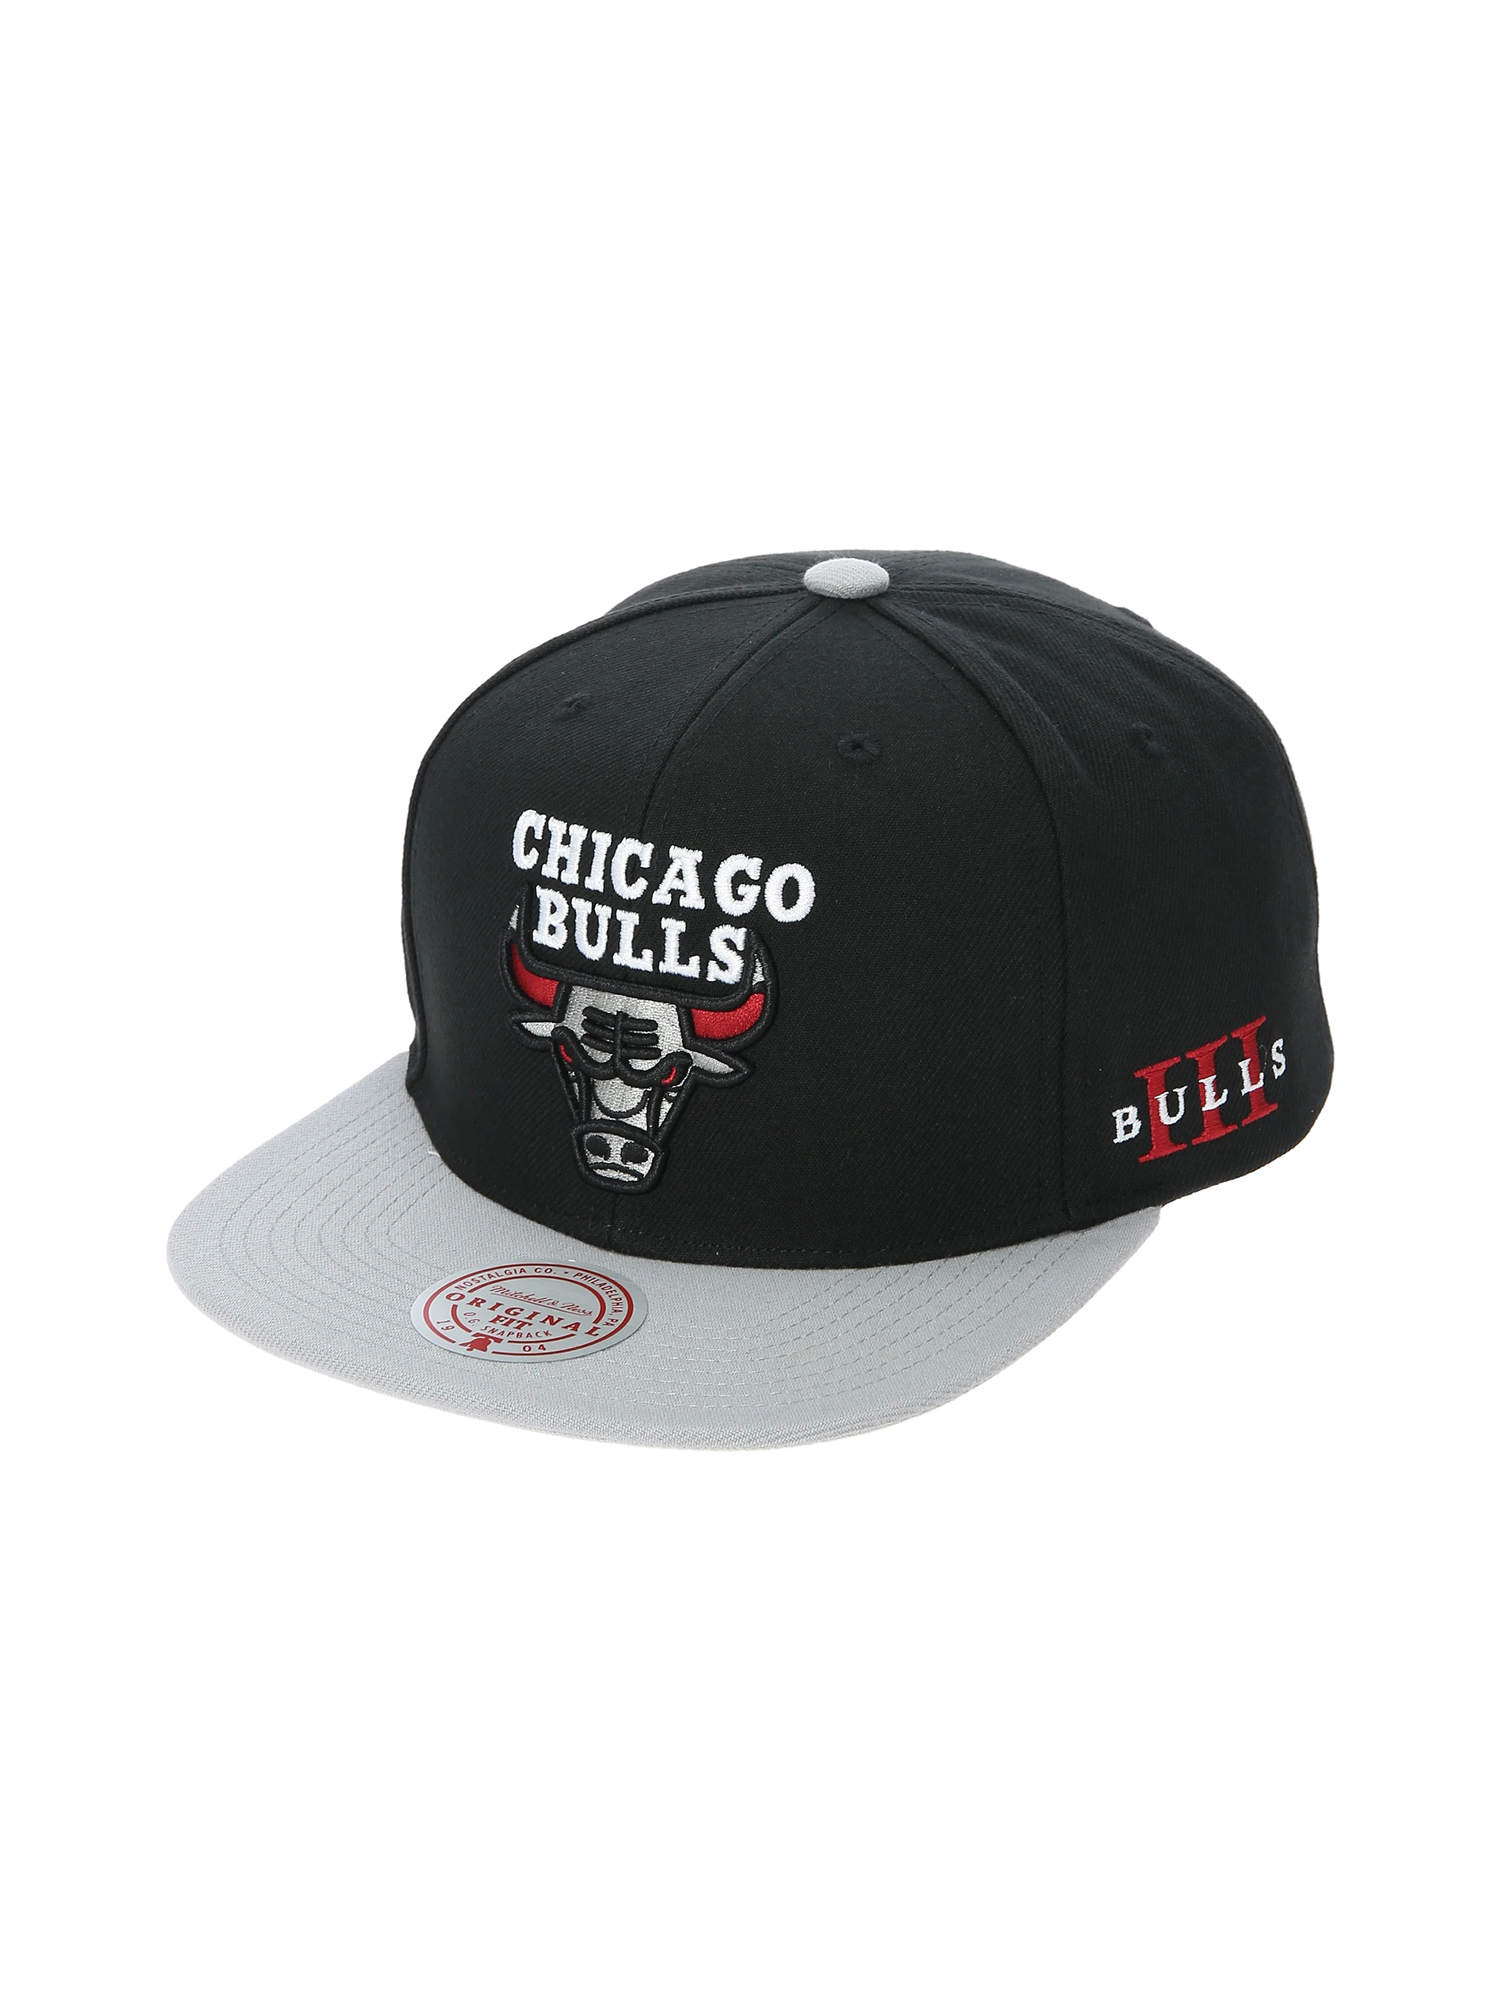 ブルズ キャップ ミッチェルアンドネス NBA bulls キャップ - 帽子